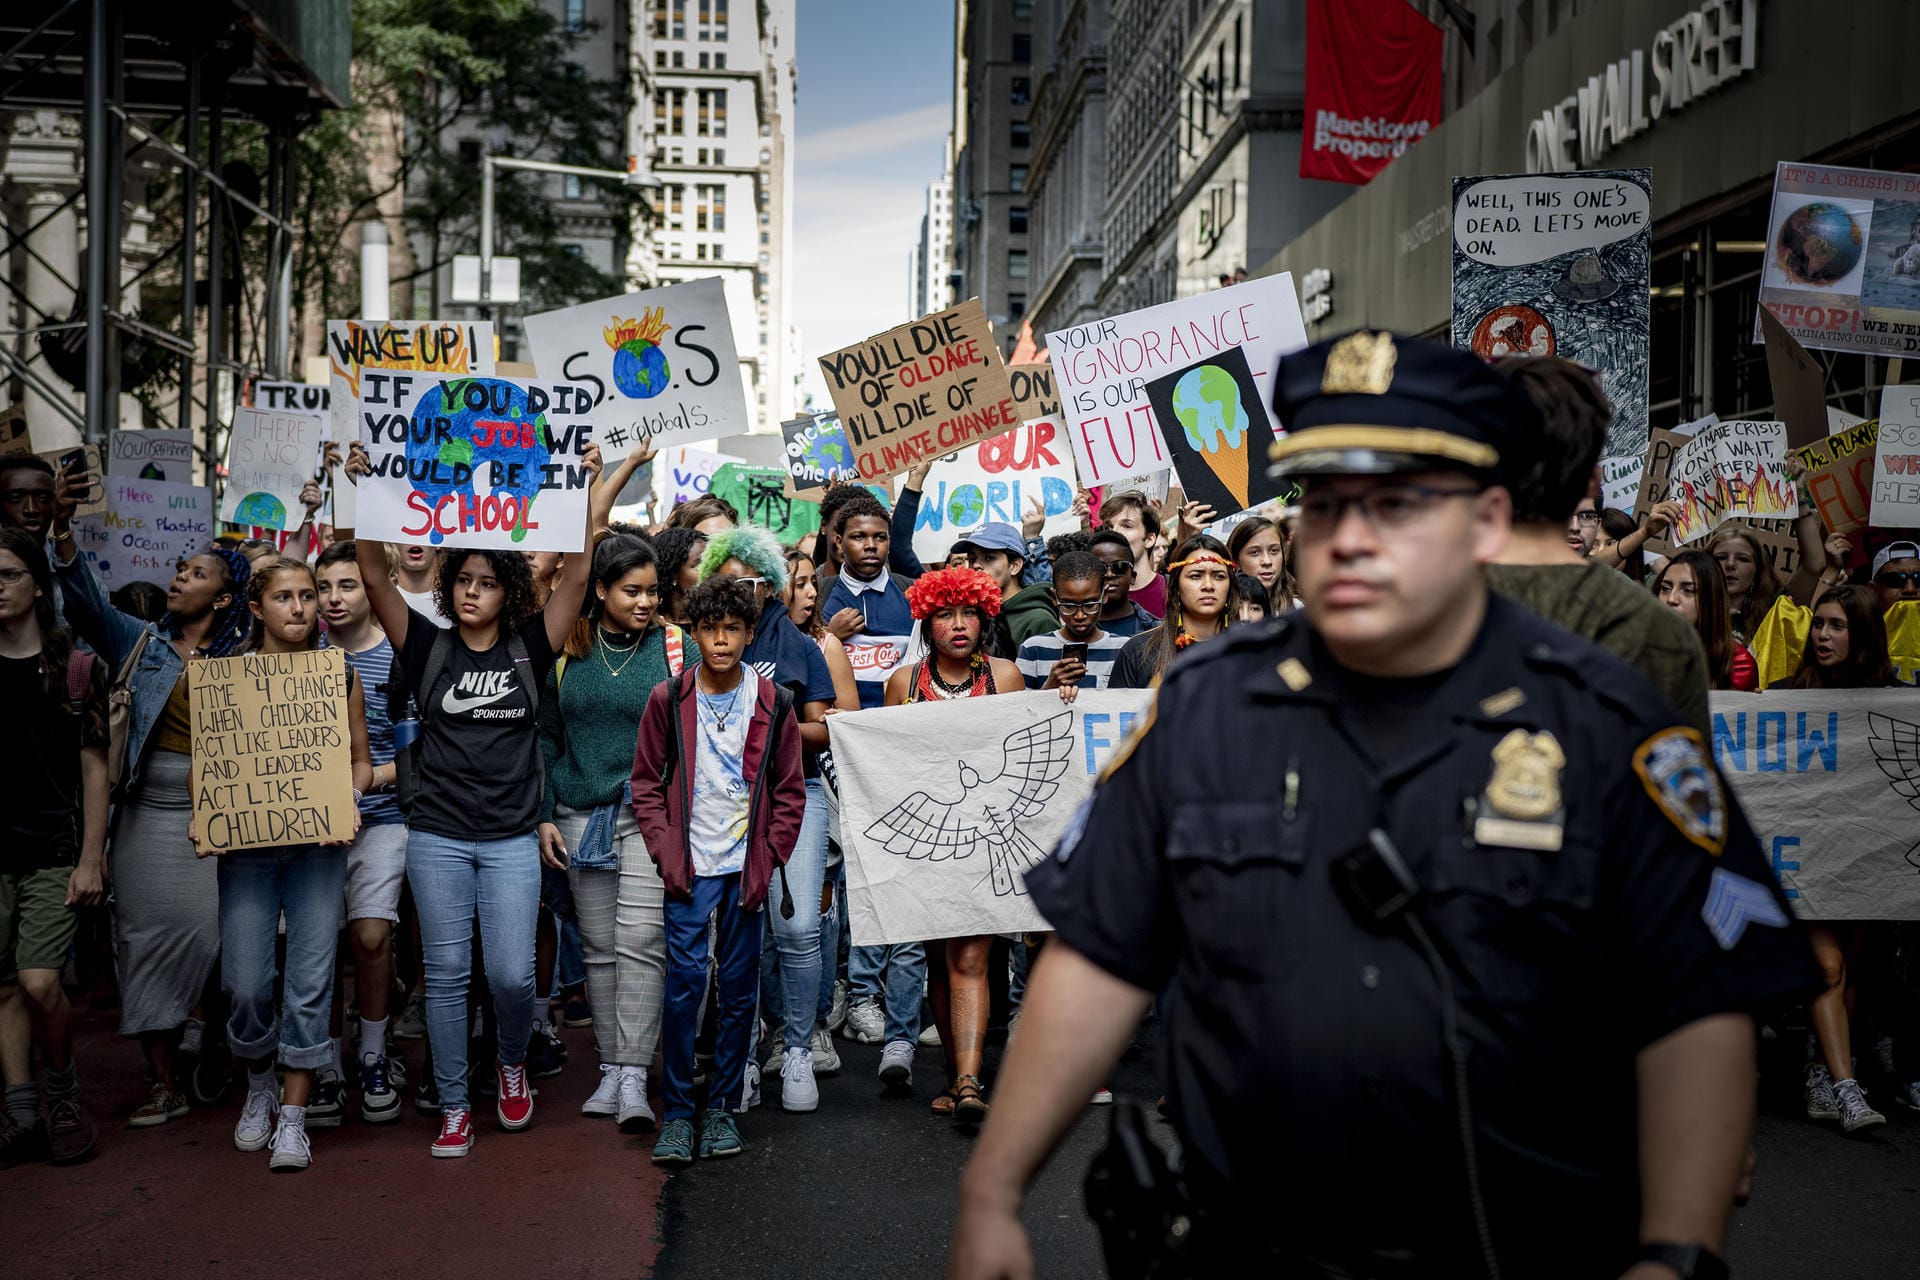 The 16 year-old Swedish climate activist Greta Thu"Würdet ihr euren Job machen, wären wir in der Schule": Streikende Schüler bei einer Kundgebung von "Fridays for Future" in New York.